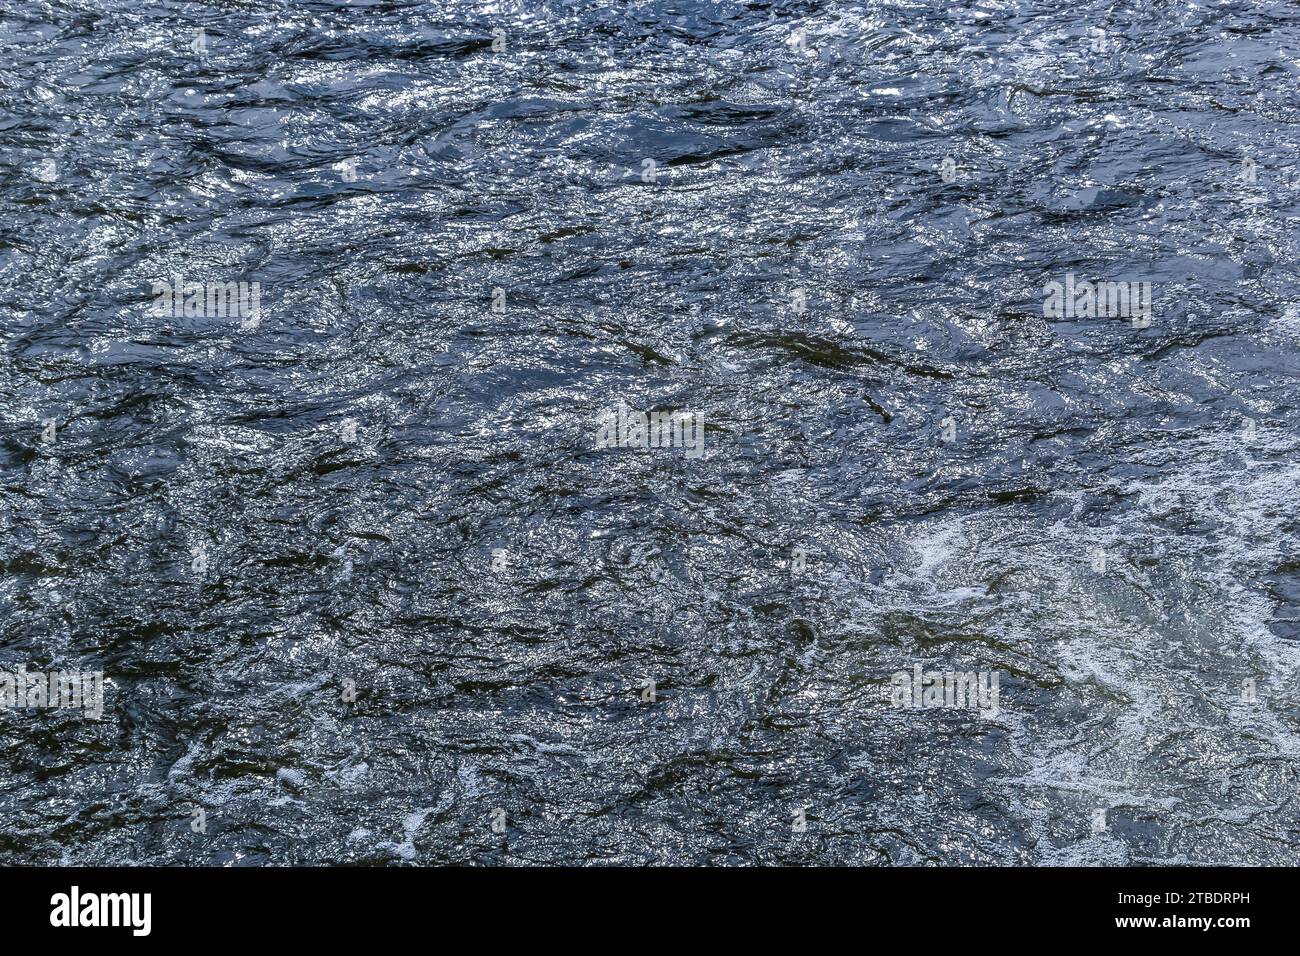 contexte. effet de flou artistique. reflet du ciel dans un lac de rivière. Banque D'Images